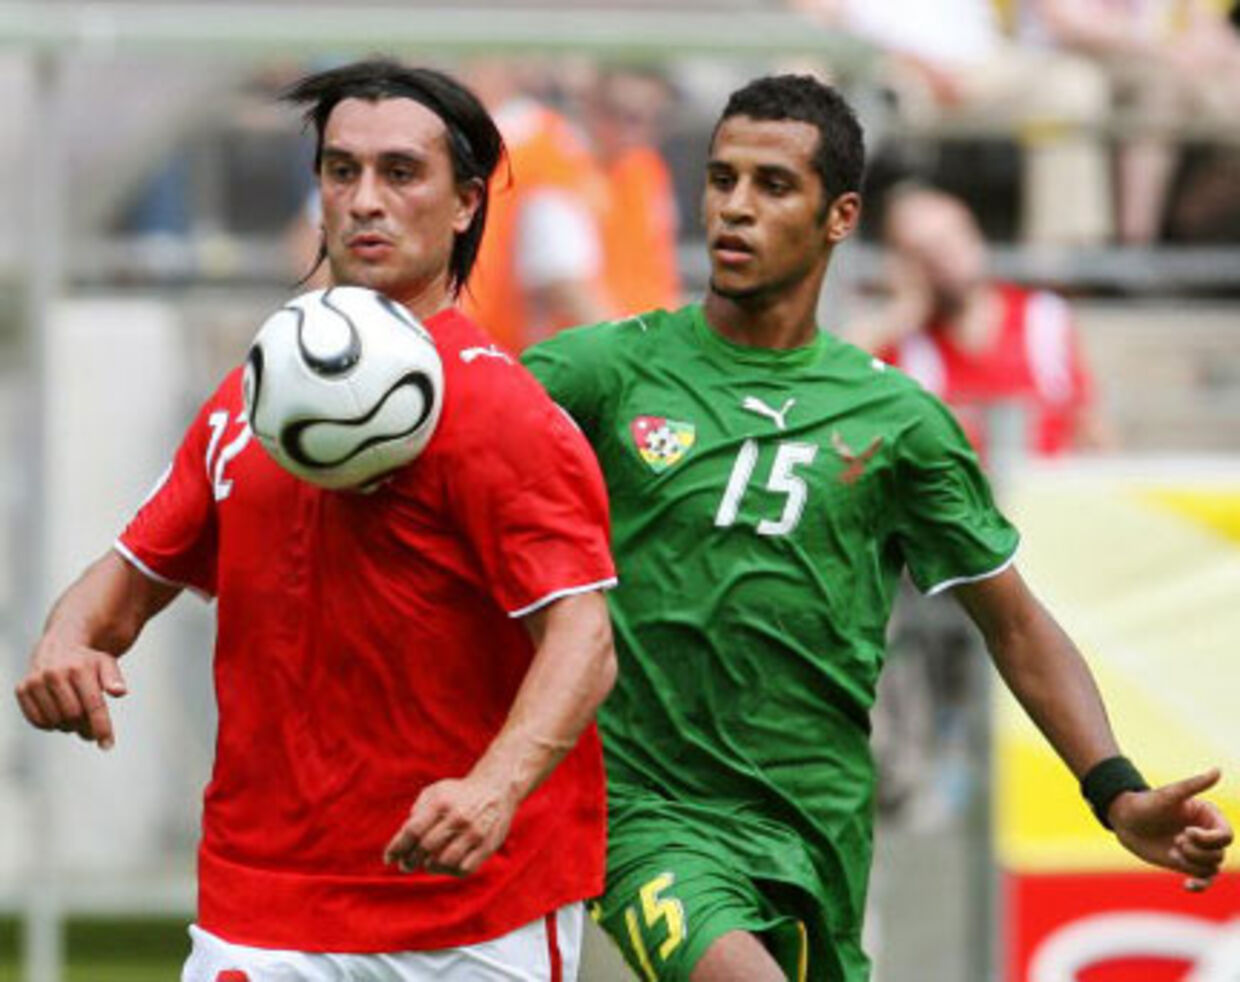 Togo-spillerne vil hjem | BT Fodbold - www.bt.dk